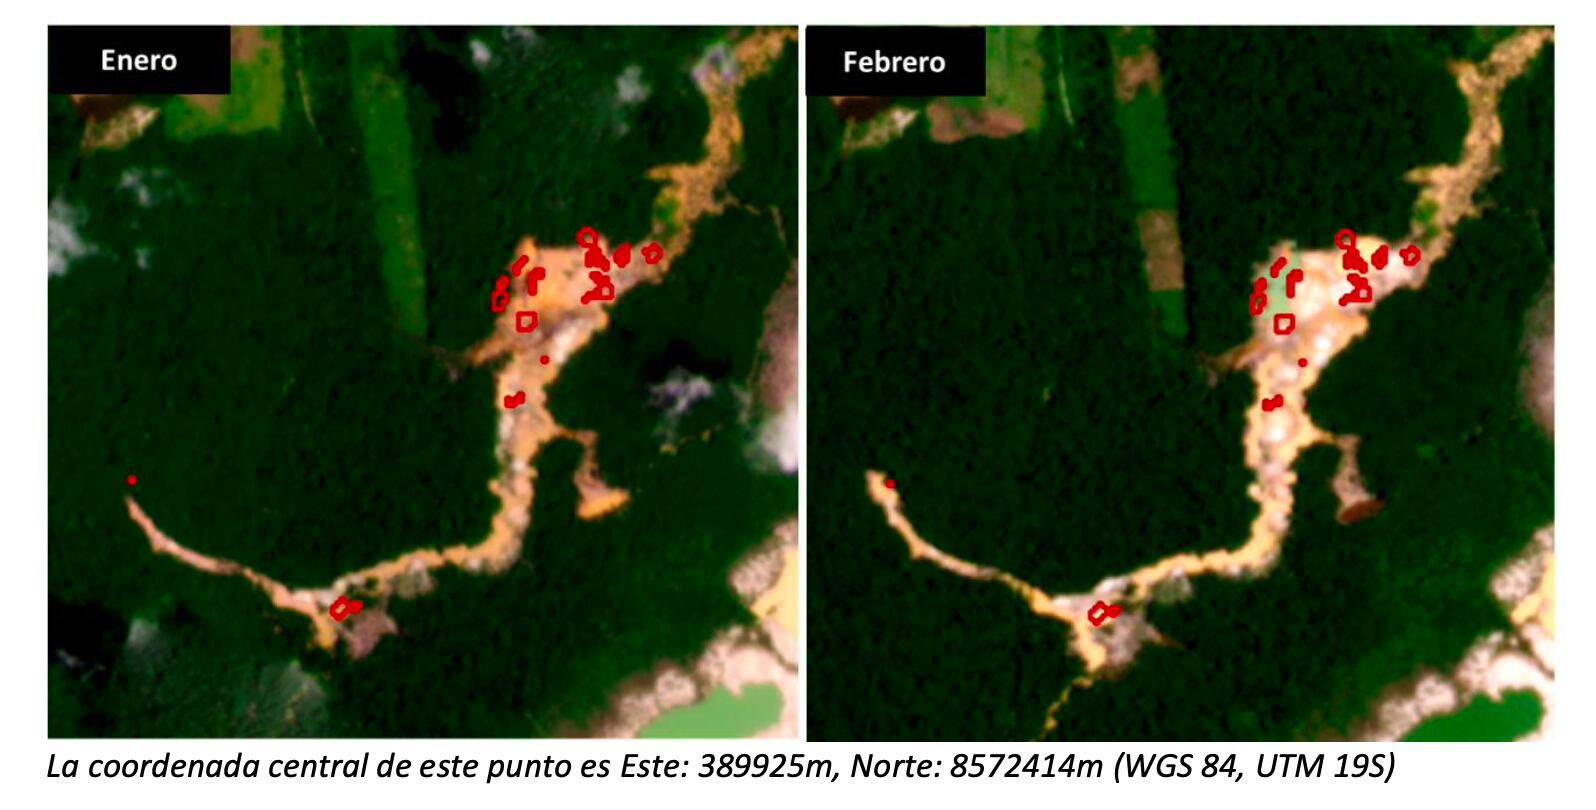 Nuevos hallazgos de pérdida de cobertura de bosque por minería en Zona de Amortiguamiento de la Reserva Nacional Tambopata, sector La Pampa. (Foto: Boletín RAMI - ACCA)